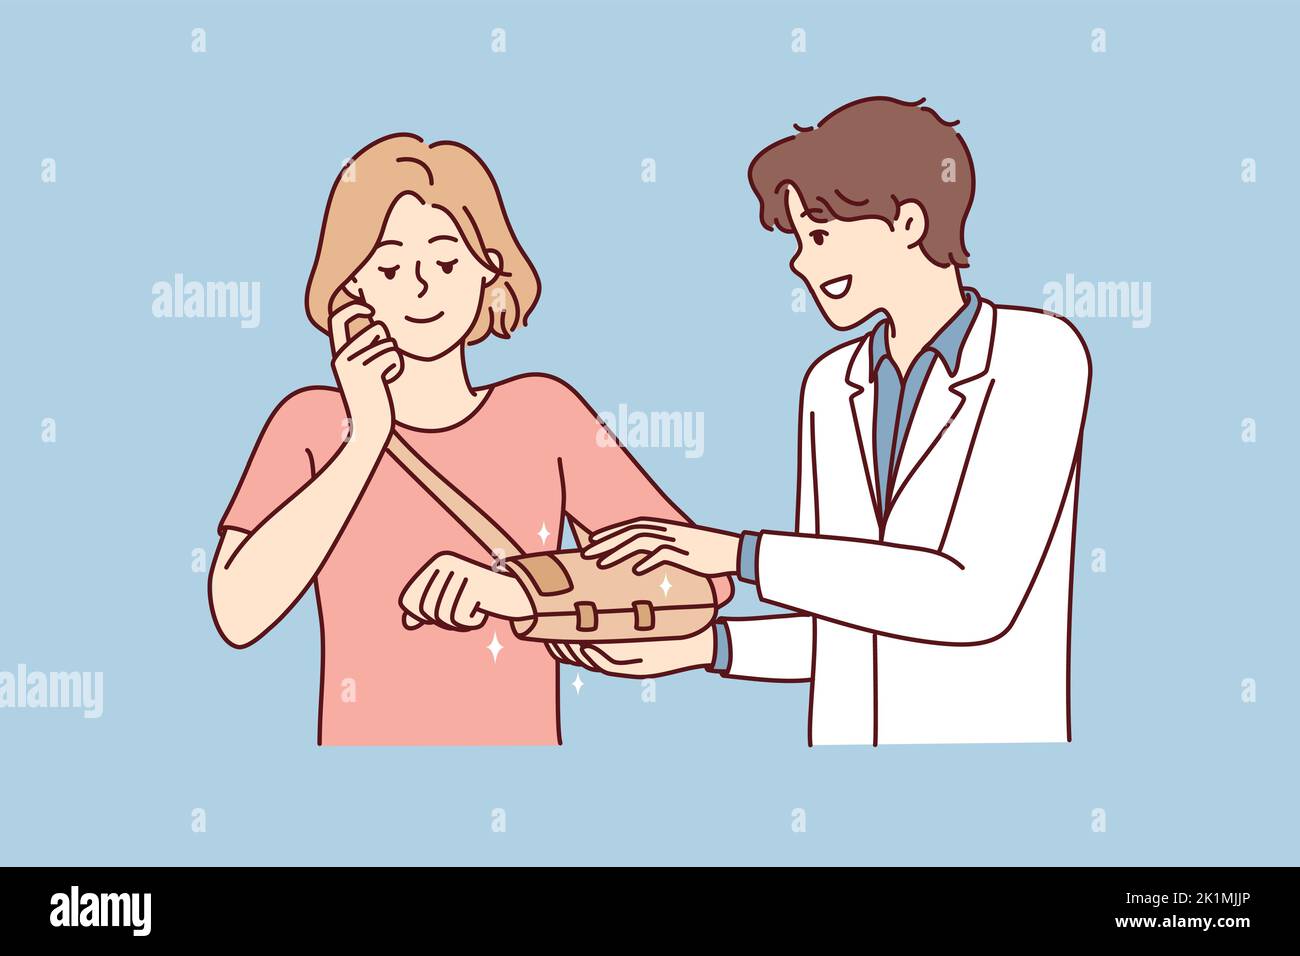 Der männliche Arzt hilft dem Patienten, nach einem Trauma oder einer Verletzung einen Verband zur Hand zu legen. Therapeut oder Chirurg heilen Frau mit gebrochener Schulter im Krankenhaus. Vektorgrafik. Stock Vektor